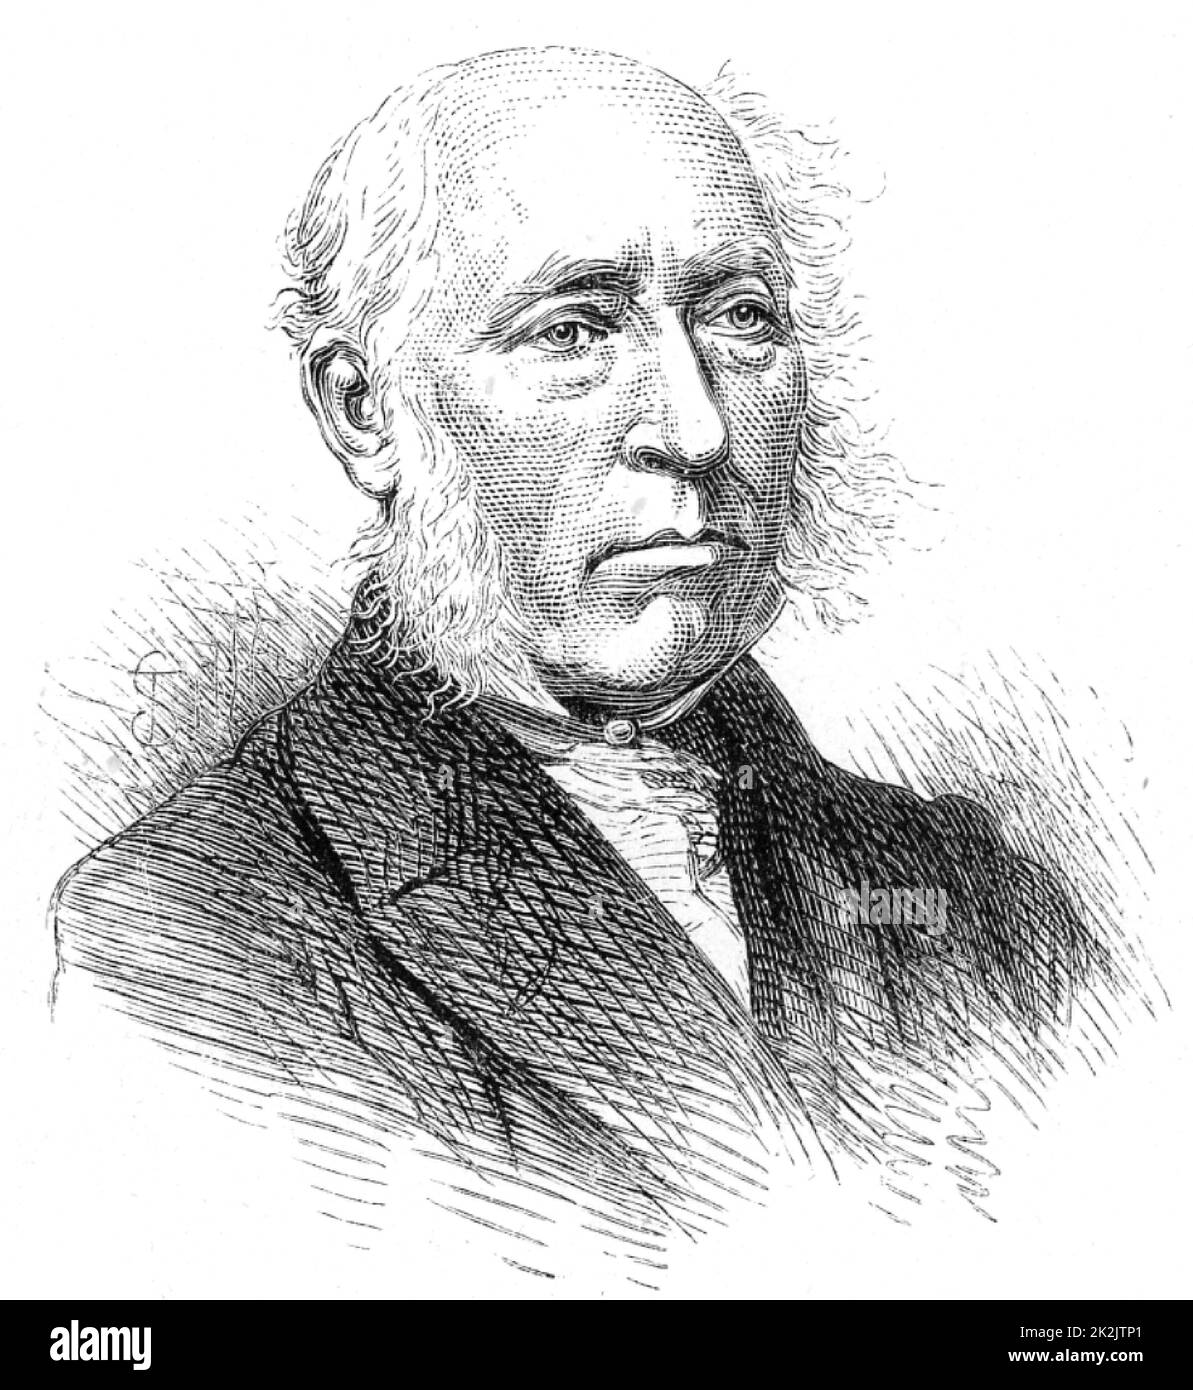 John Phillips (1800-1874) géologue britannique, neveu du géologue William Smith (1769-1839). De la vie de Sir Roderick I. Murchison par Archibald Geikie (Londres, 1875). Gravure. Banque D'Images